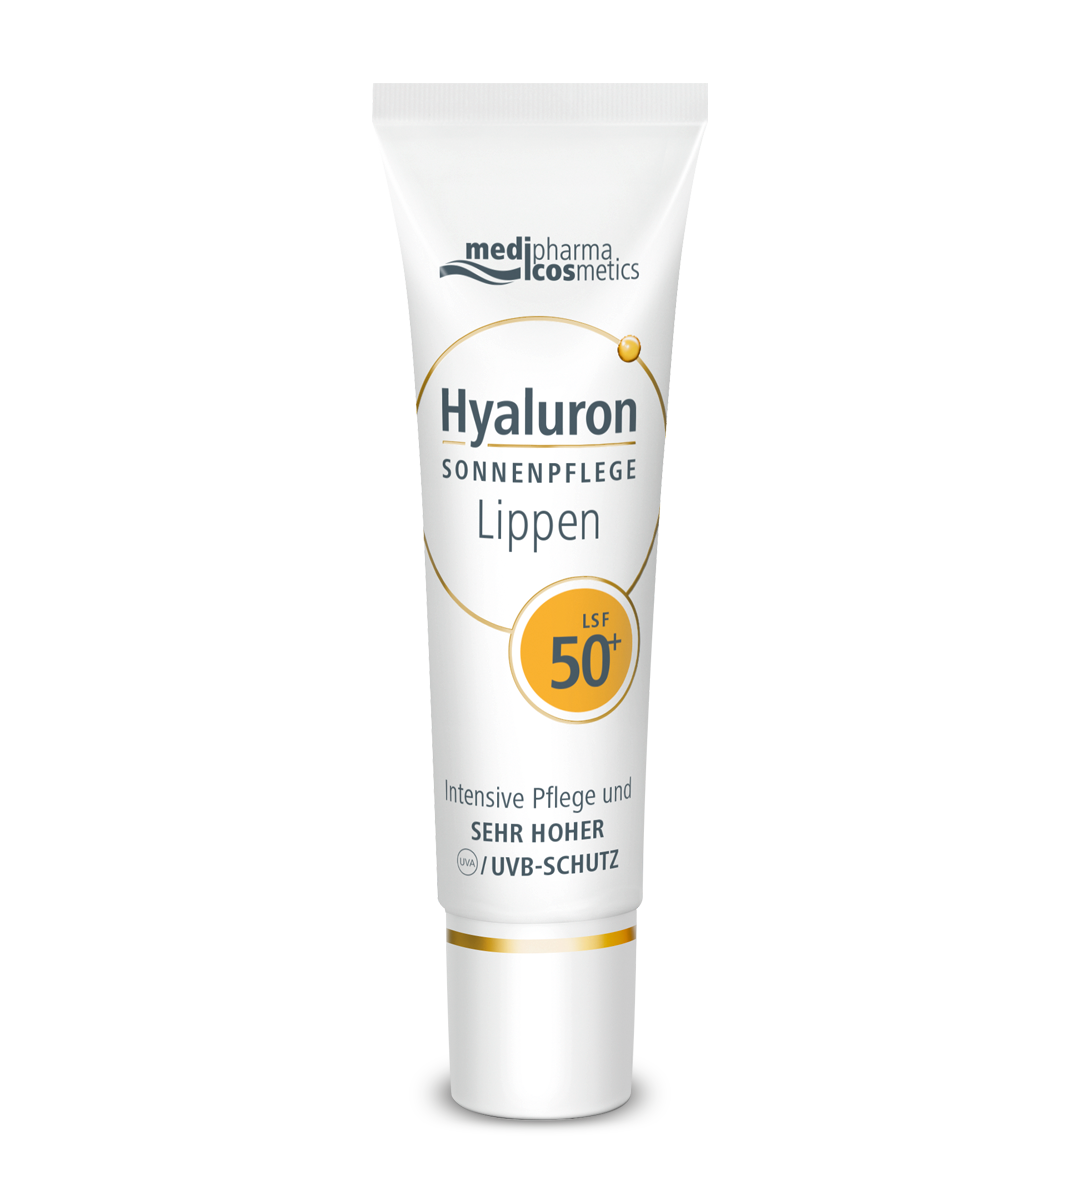 Солнцезащитный крем для губ Medipharma Cosmetics Hyaluron SPF50+, 7 мл как продавать когда не покупают три мощнейших инструмента продаж на в2в рынках кузин а